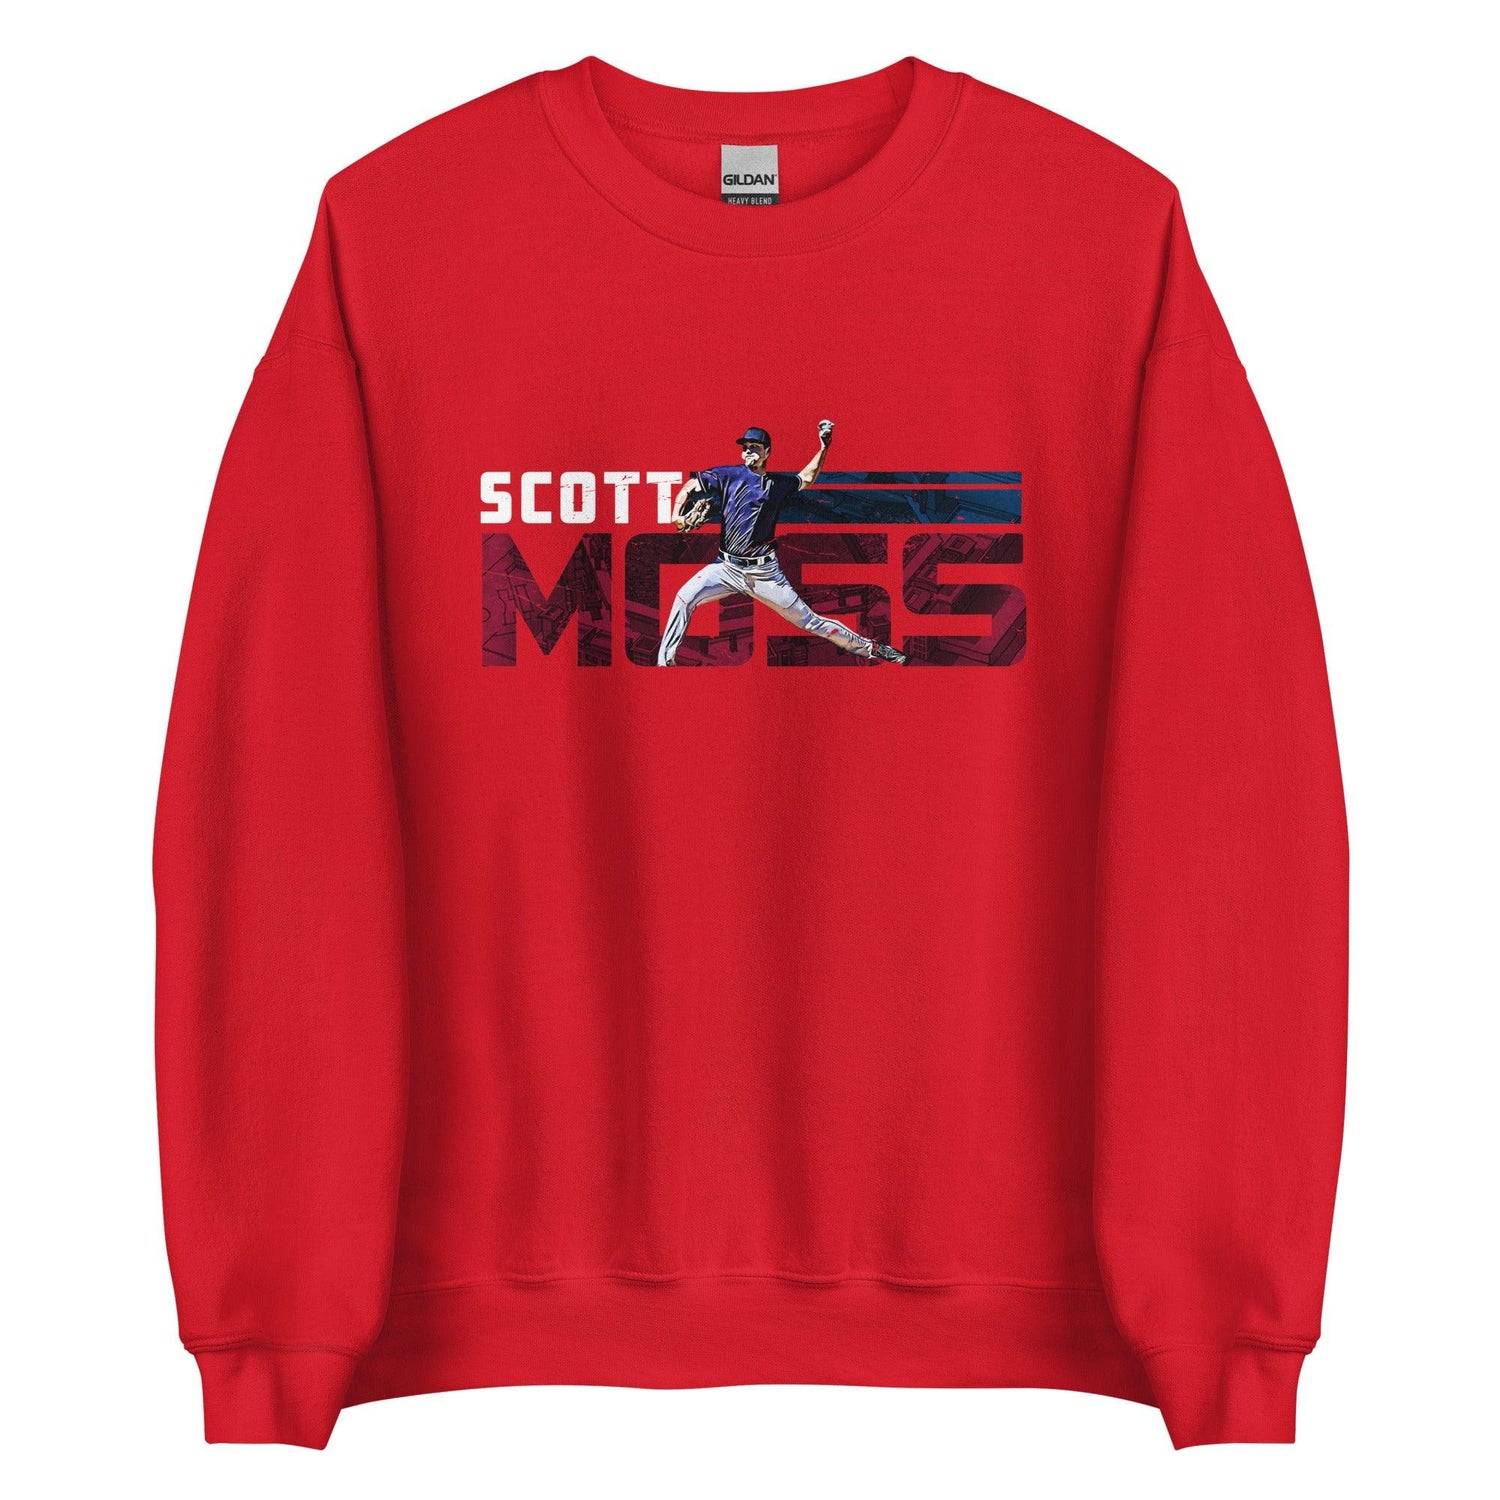 Scott Moss "Speed" Sweatshirt - Fan Arch